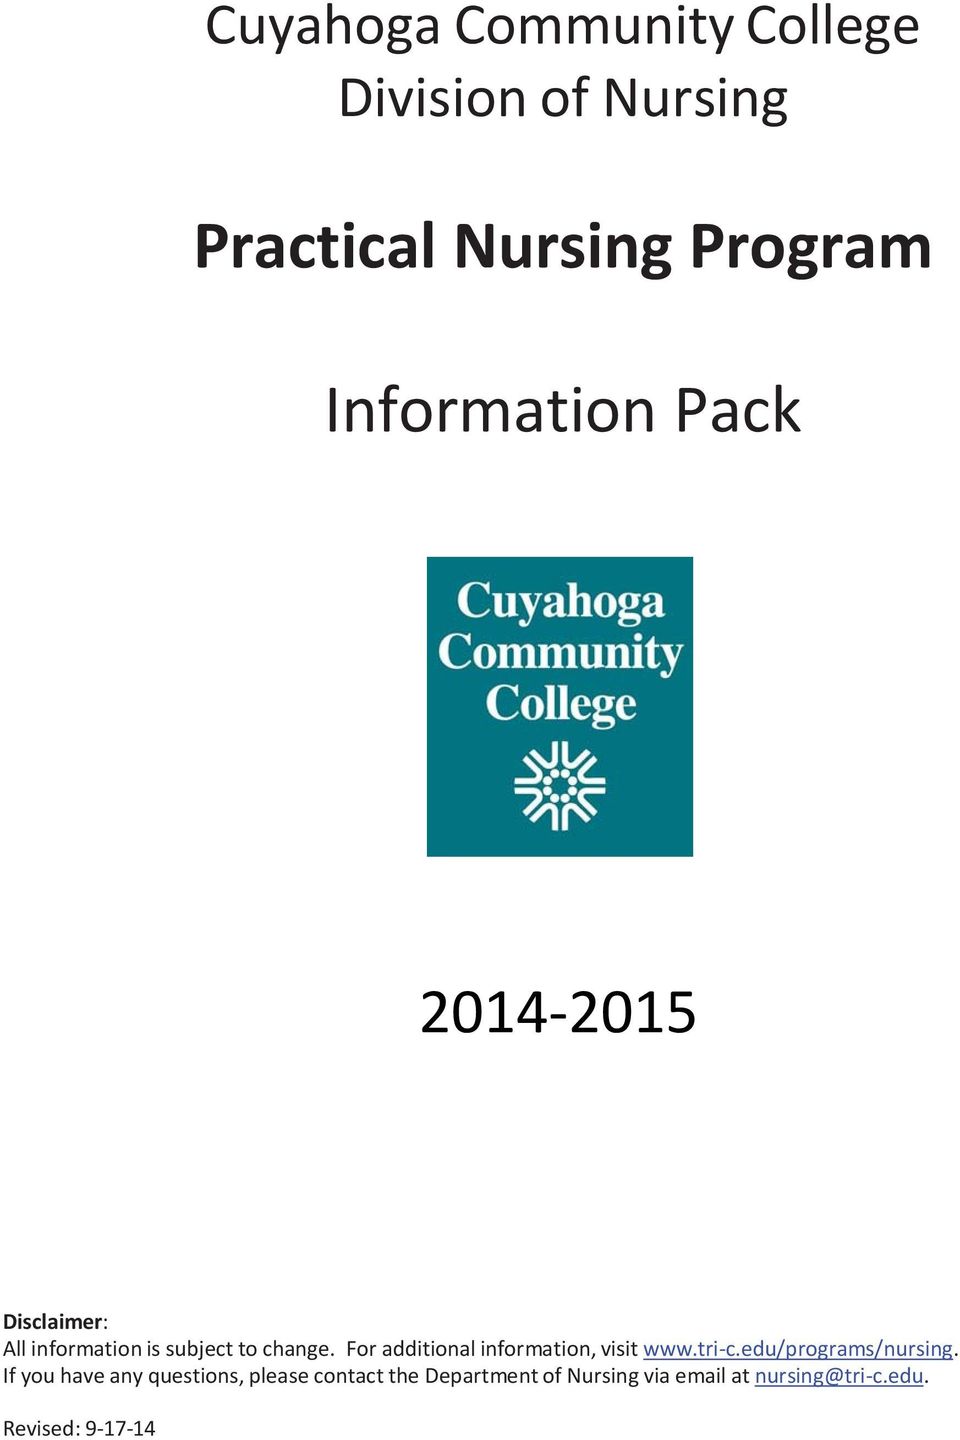 For additional information, visit www.tri c.edu/programs/nursing.